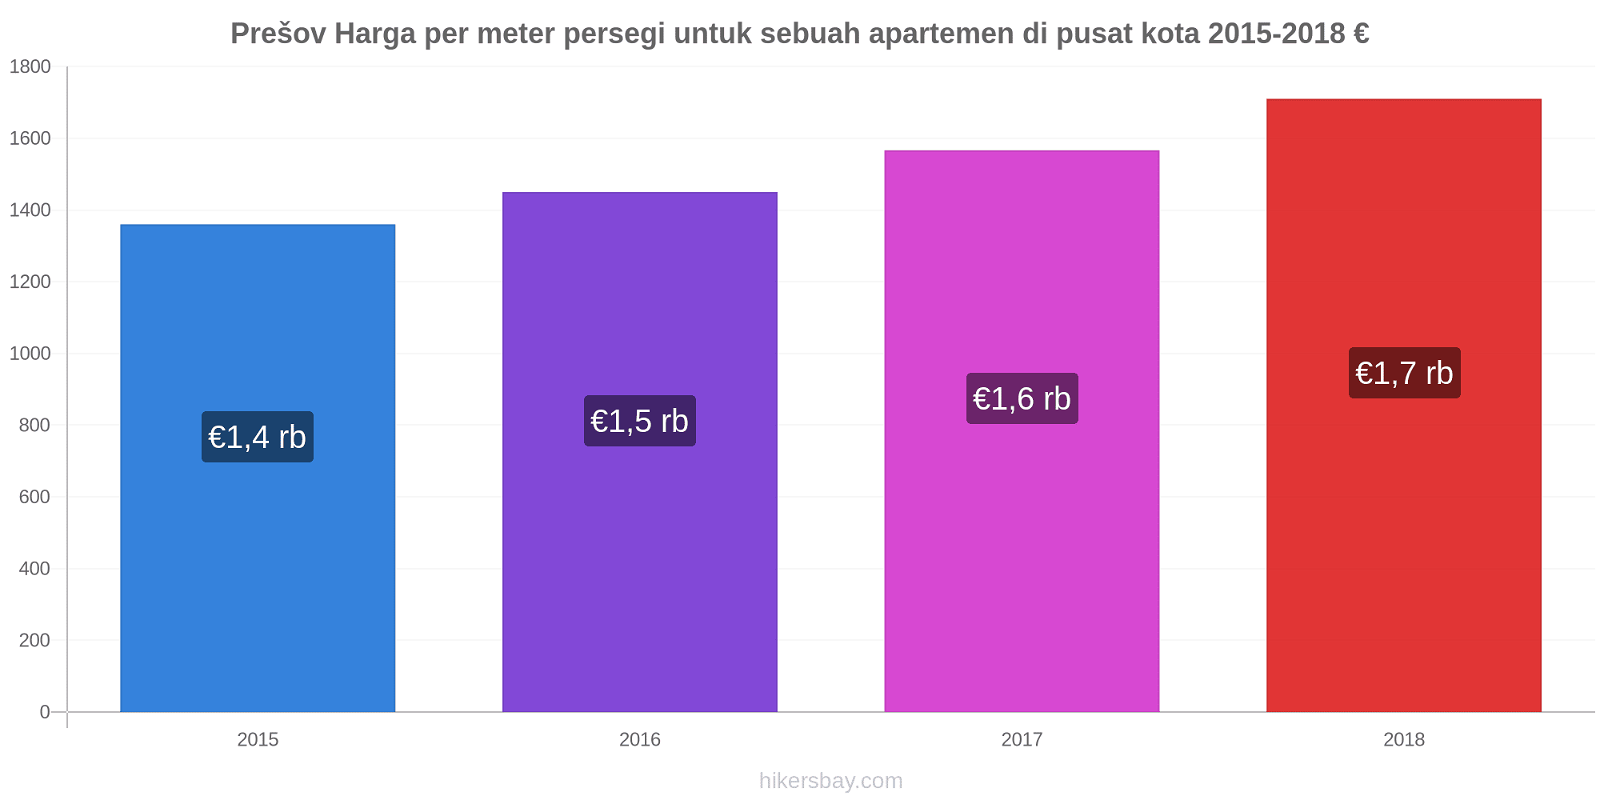 Prešov perubahan harga Harga per meter persegi untuk sebuah apartemen di pusat kota hikersbay.com